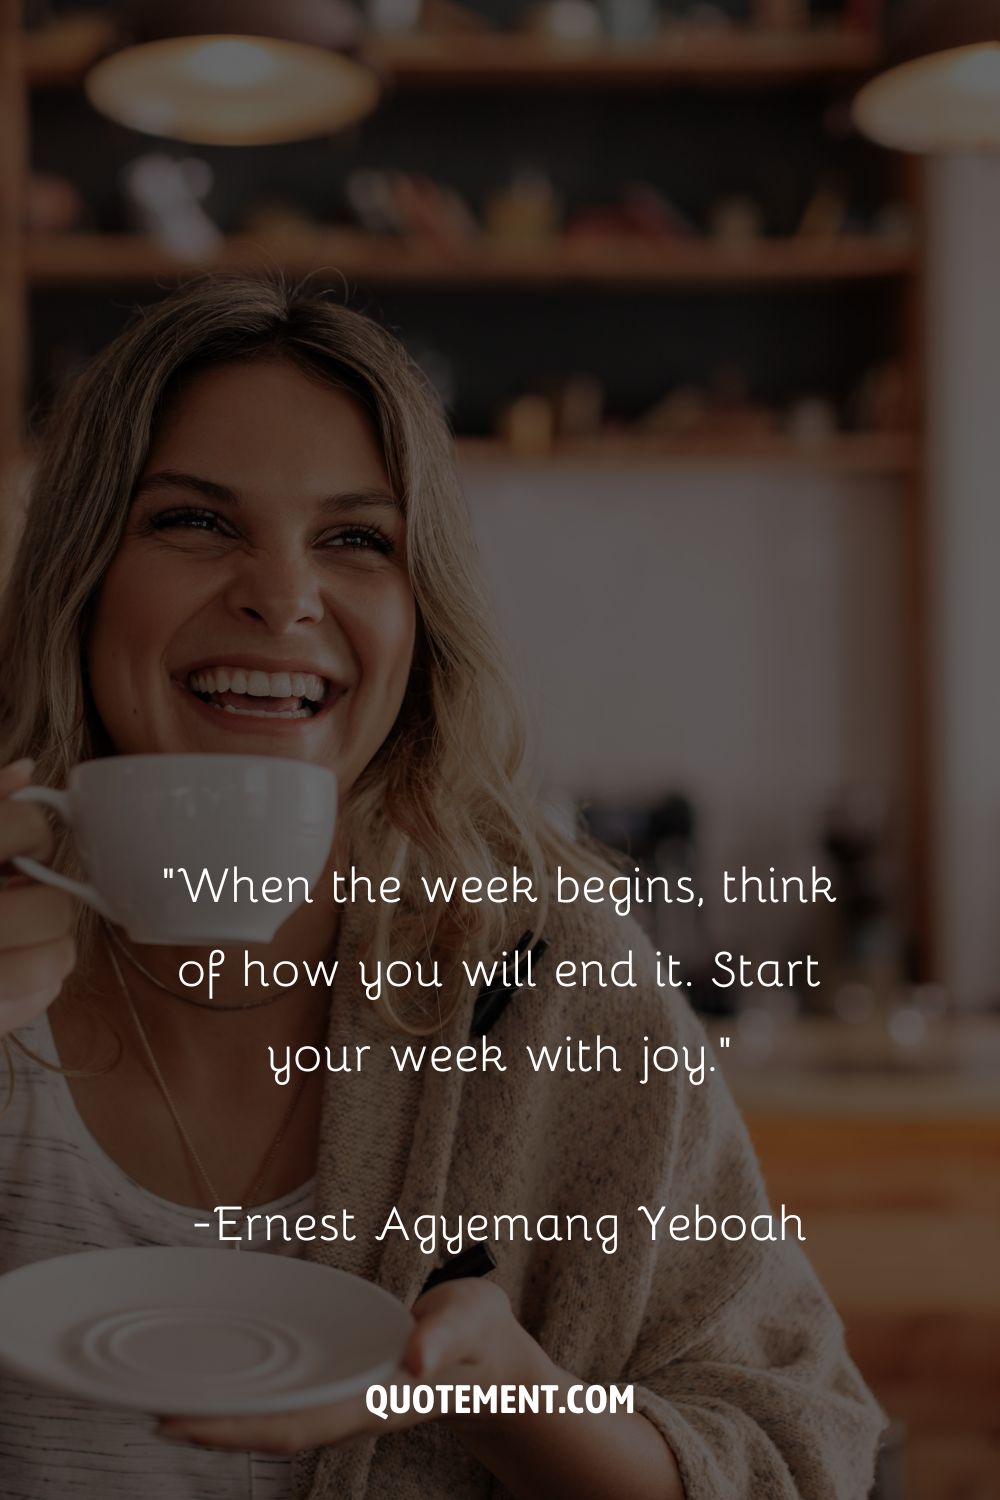 Una mujer rubia sonriendo y sosteniendo una taza que representa la cita top new week